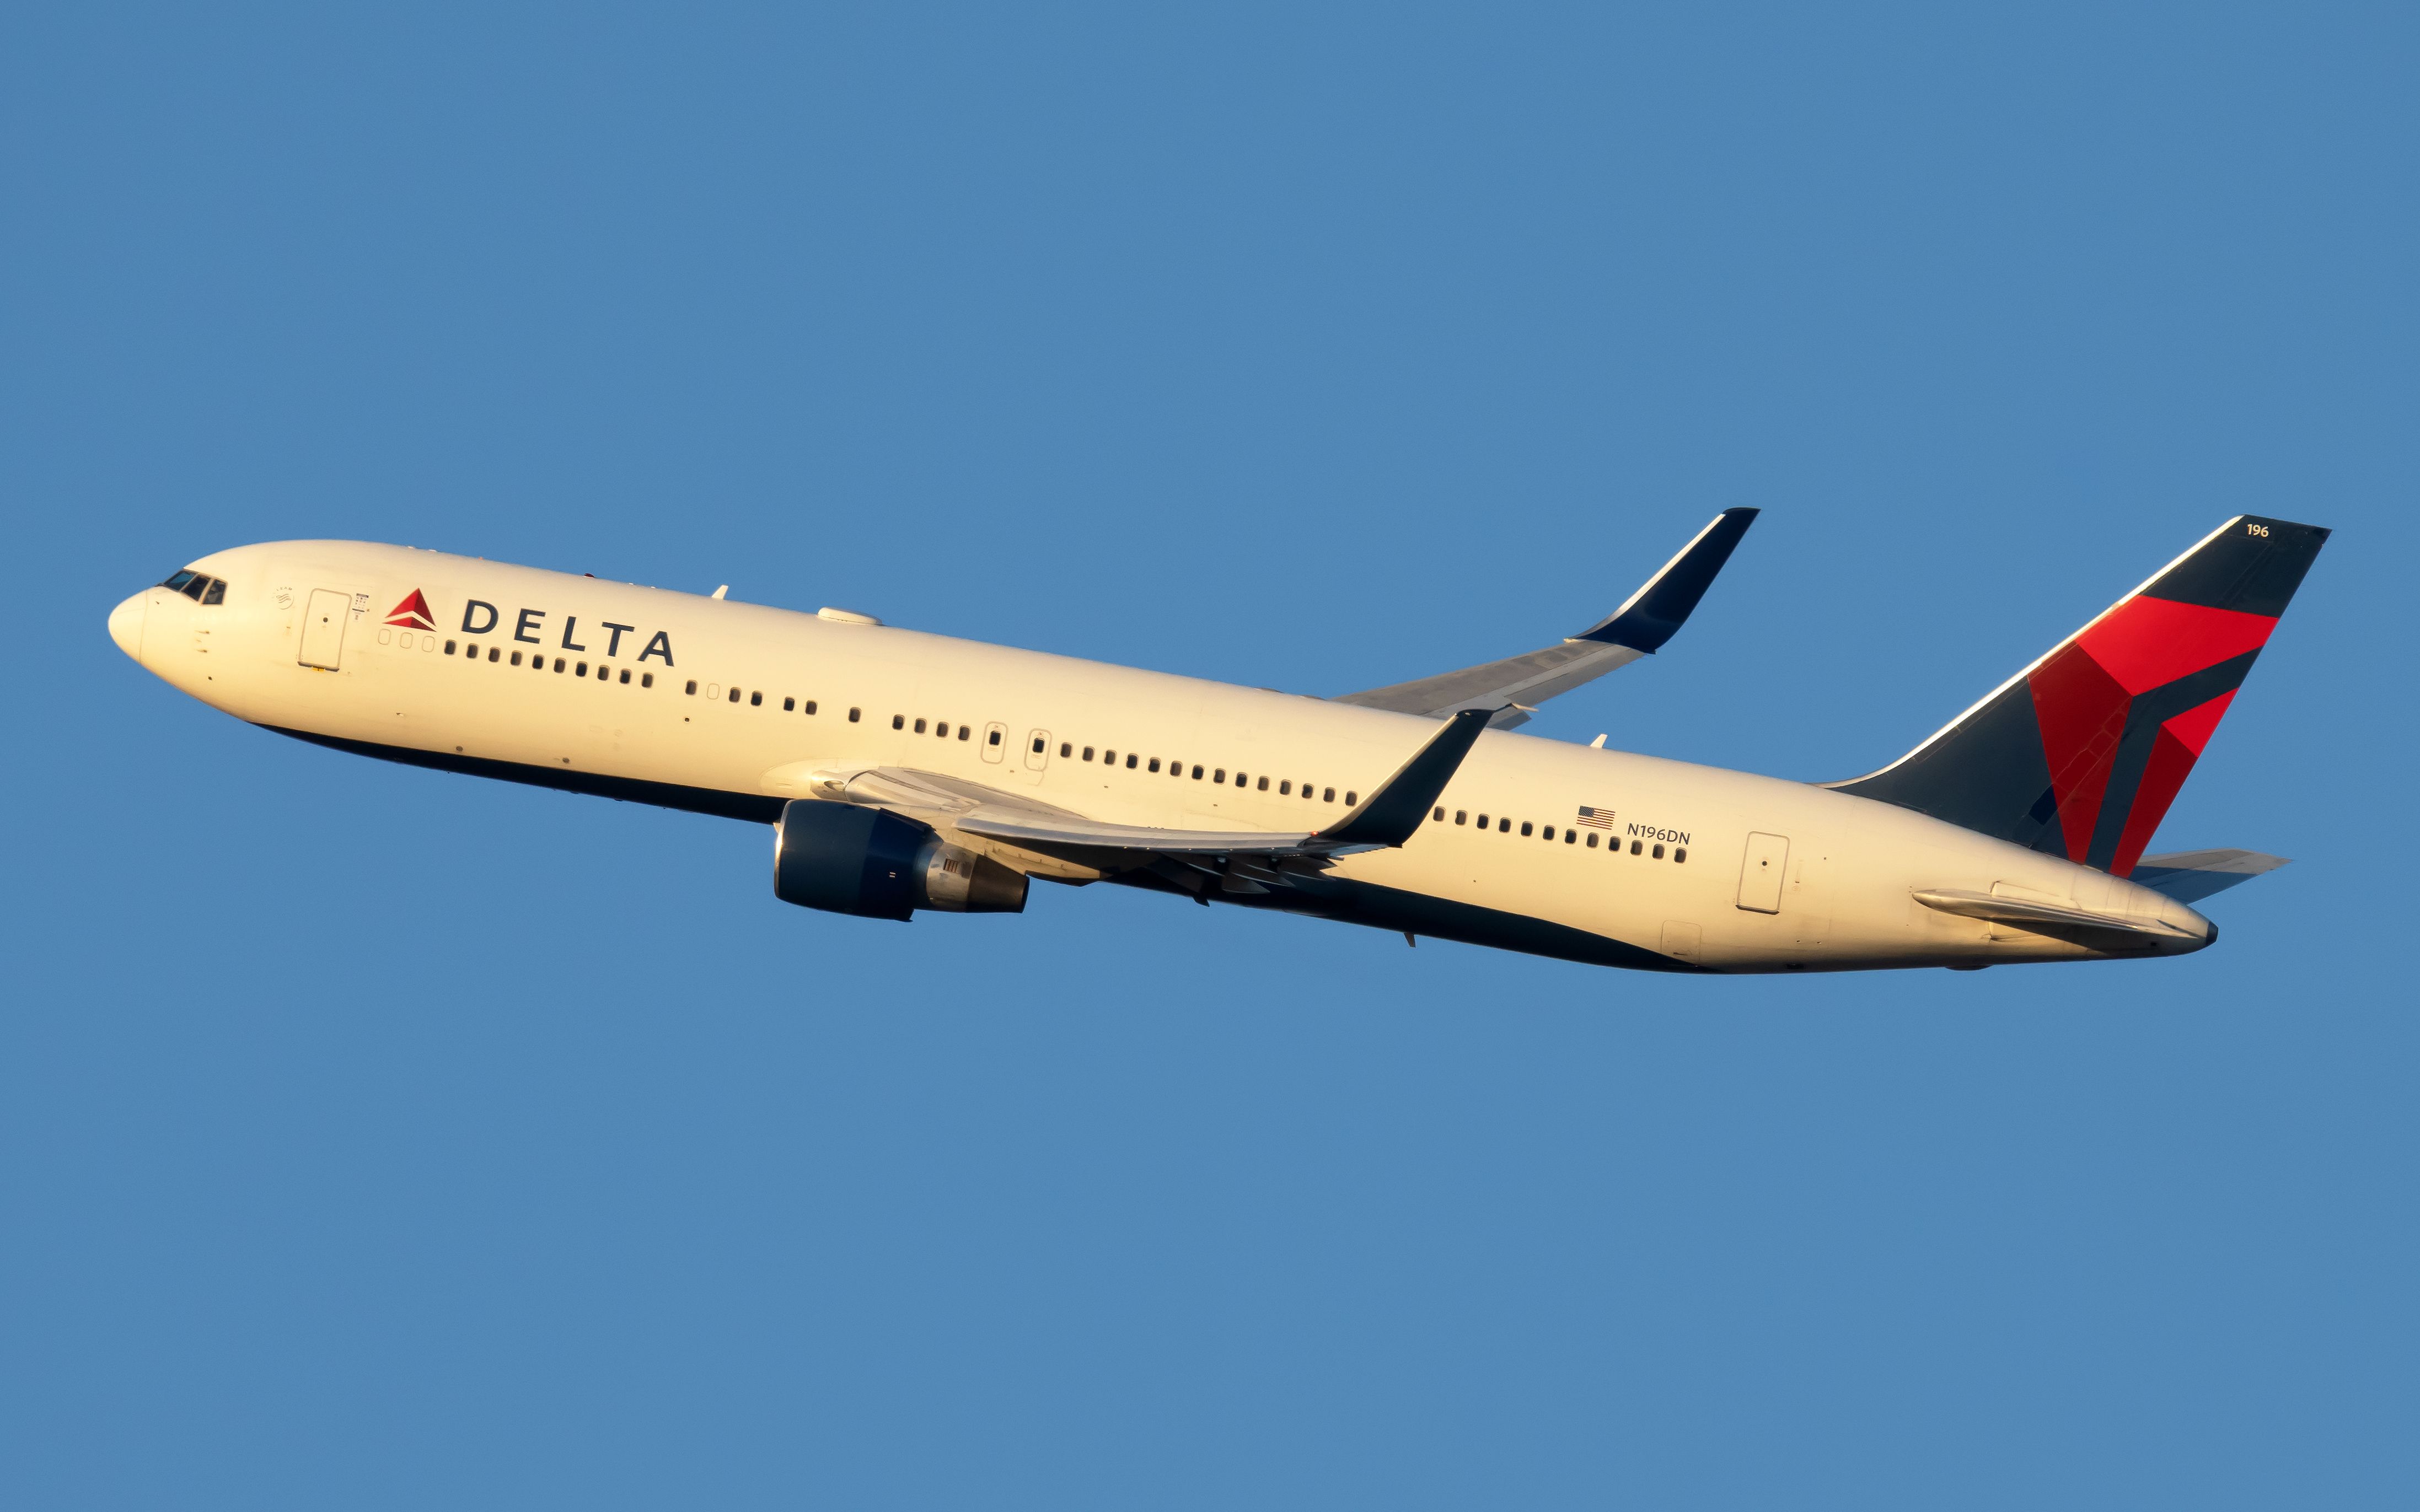 Delta Air Lines 767-300ER taking off